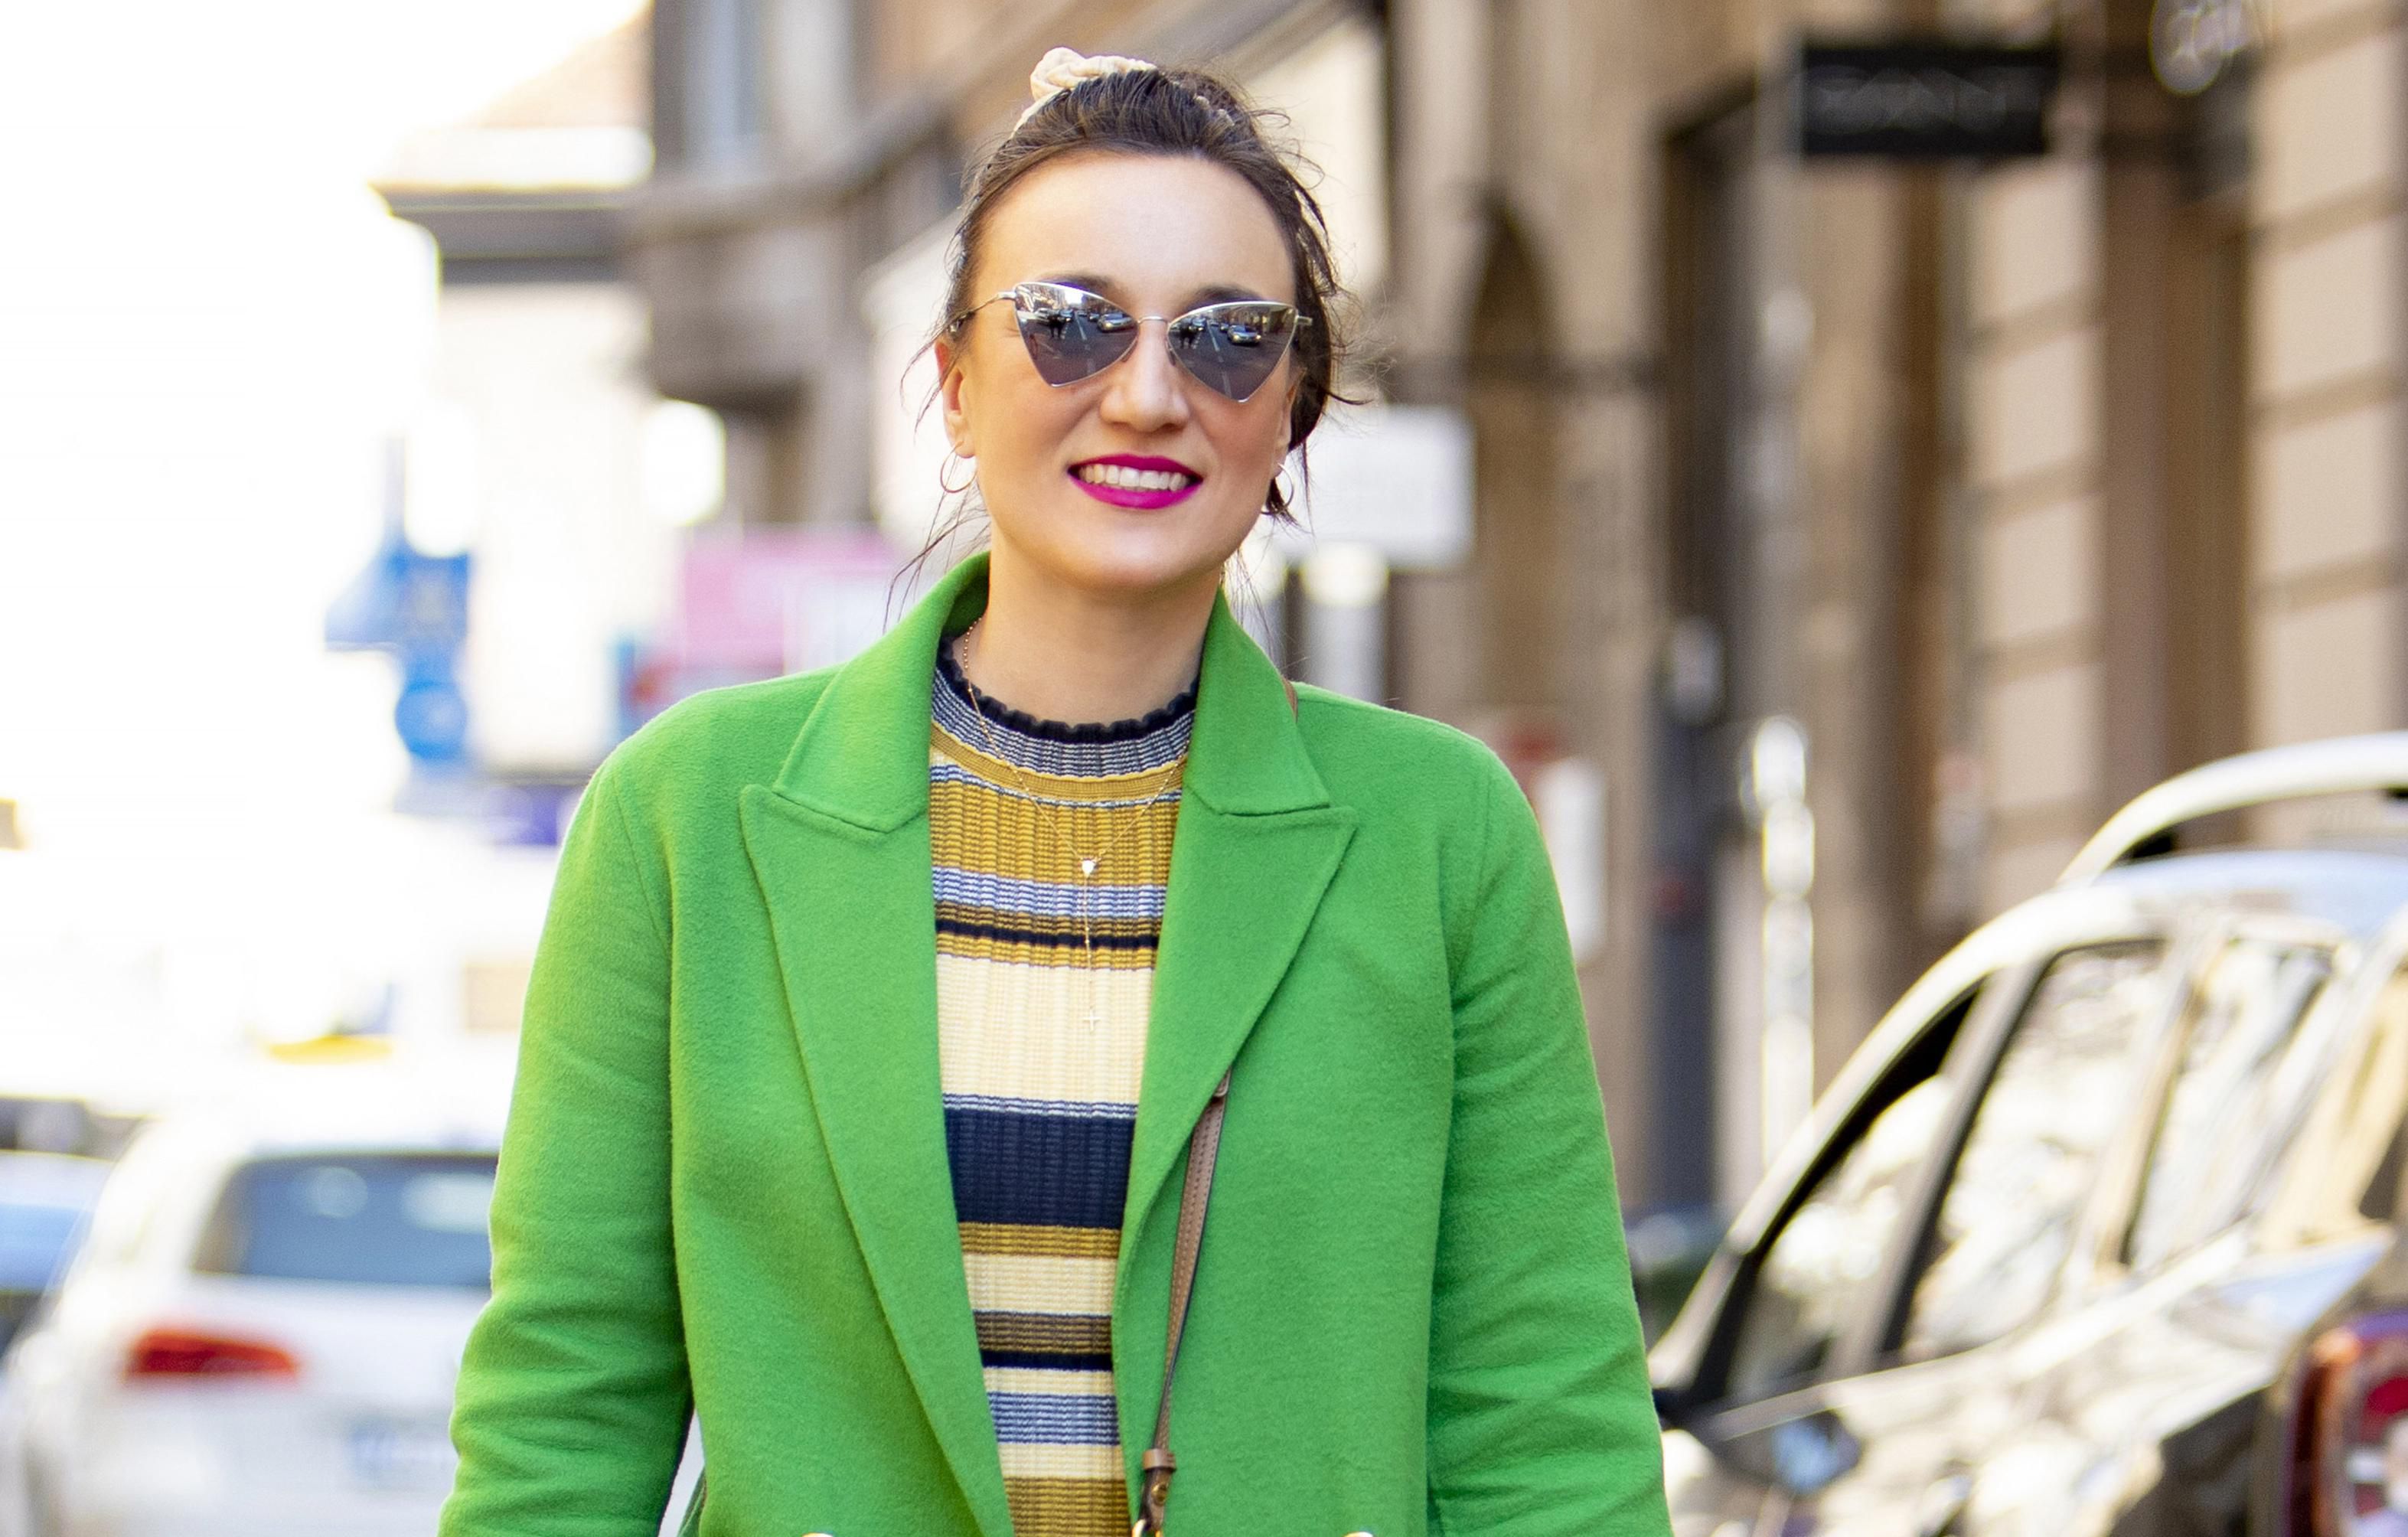 Njezini modni odabiri uvijek izazovu pozitivne reakcije: 'Lijep je dan, pa sam se odlučila za veselu zelenu'